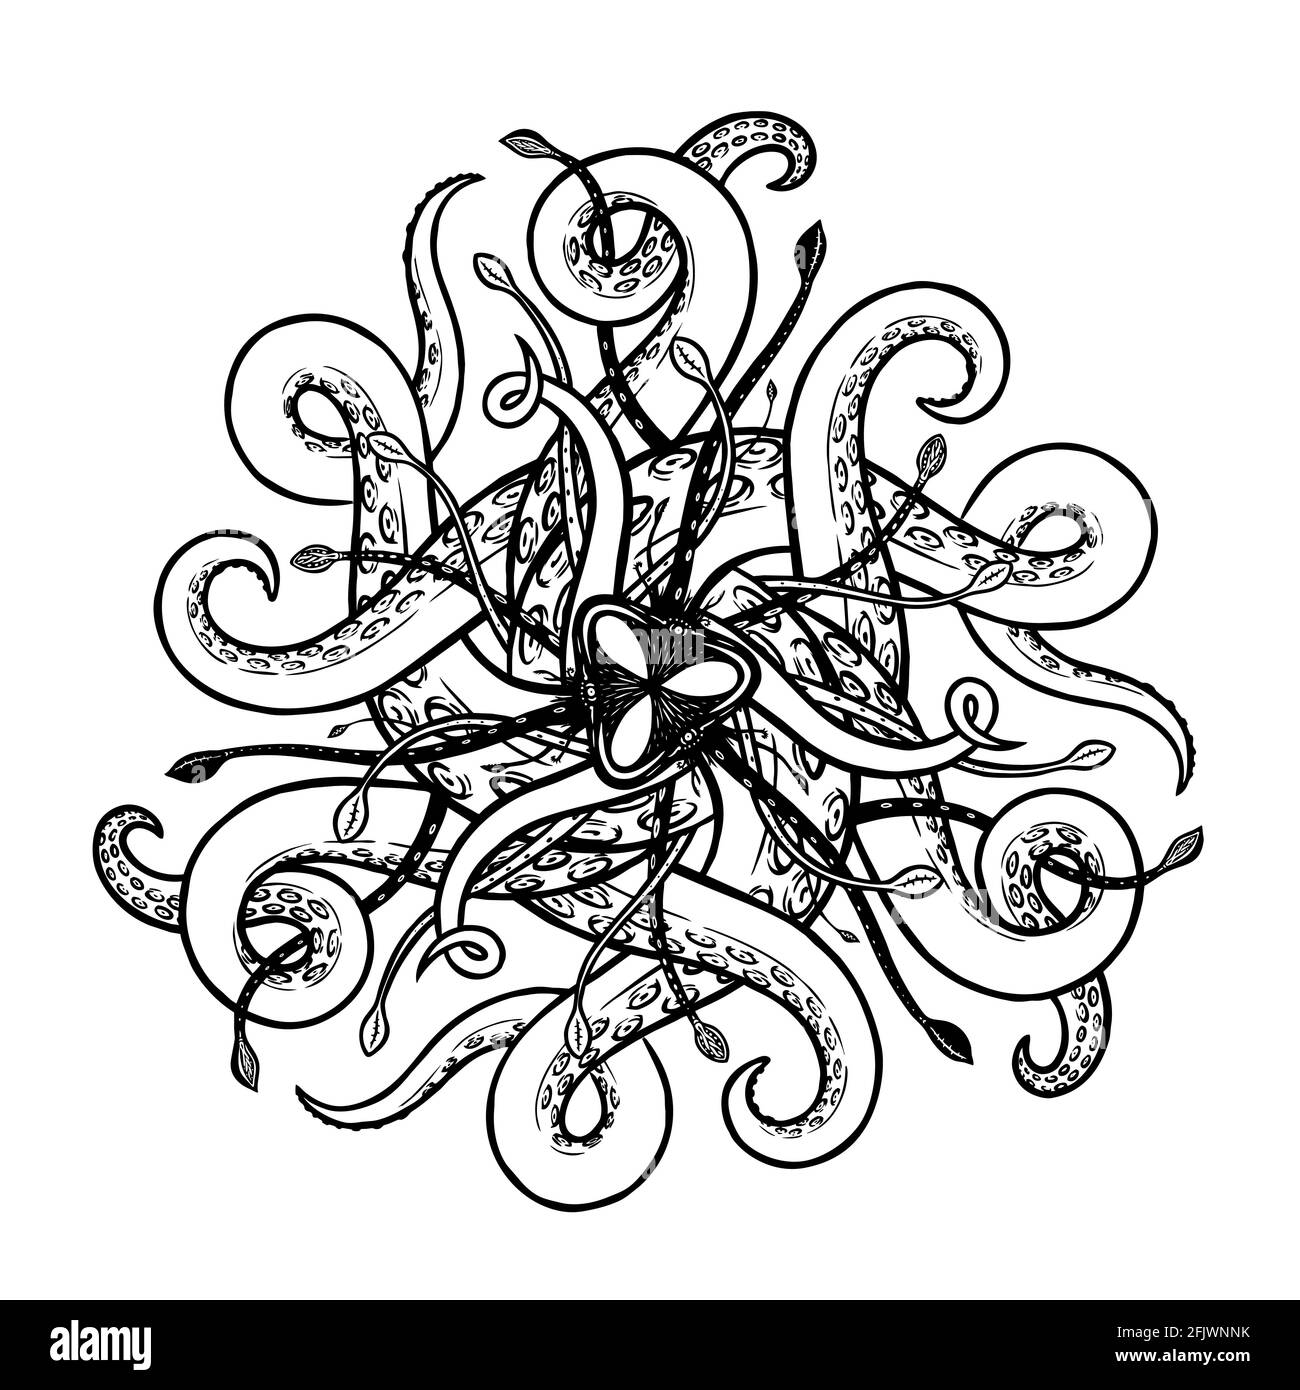 Disegno astratto vettore ornamento marino con tentacoli e ventose con simmetria radiale Illustrazione Vettoriale